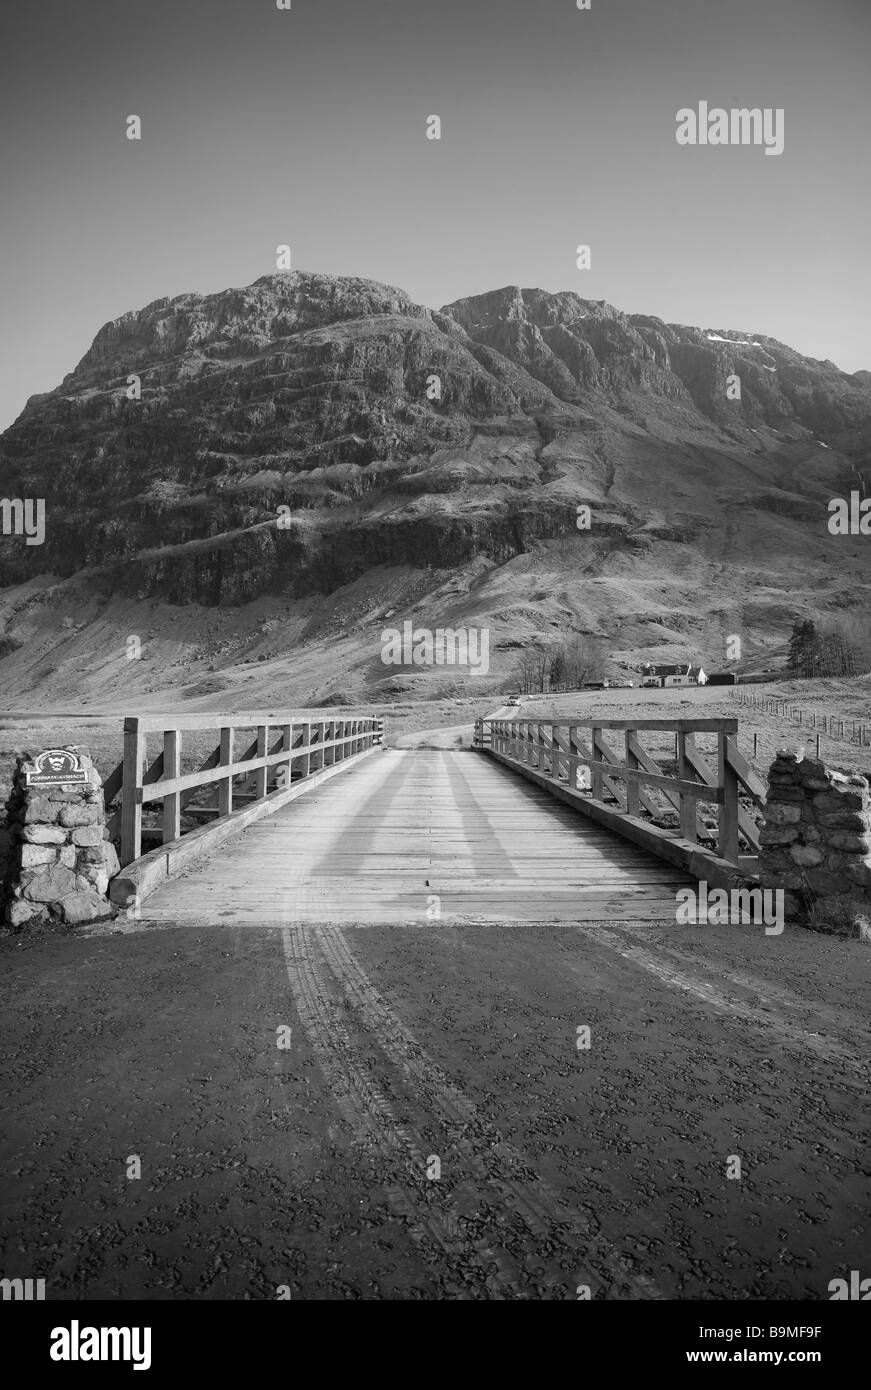 Immagine in bianco e nero,ponte Gateway,prospettiva in ritratto.Ampio angolo,montagna. Foto Stock